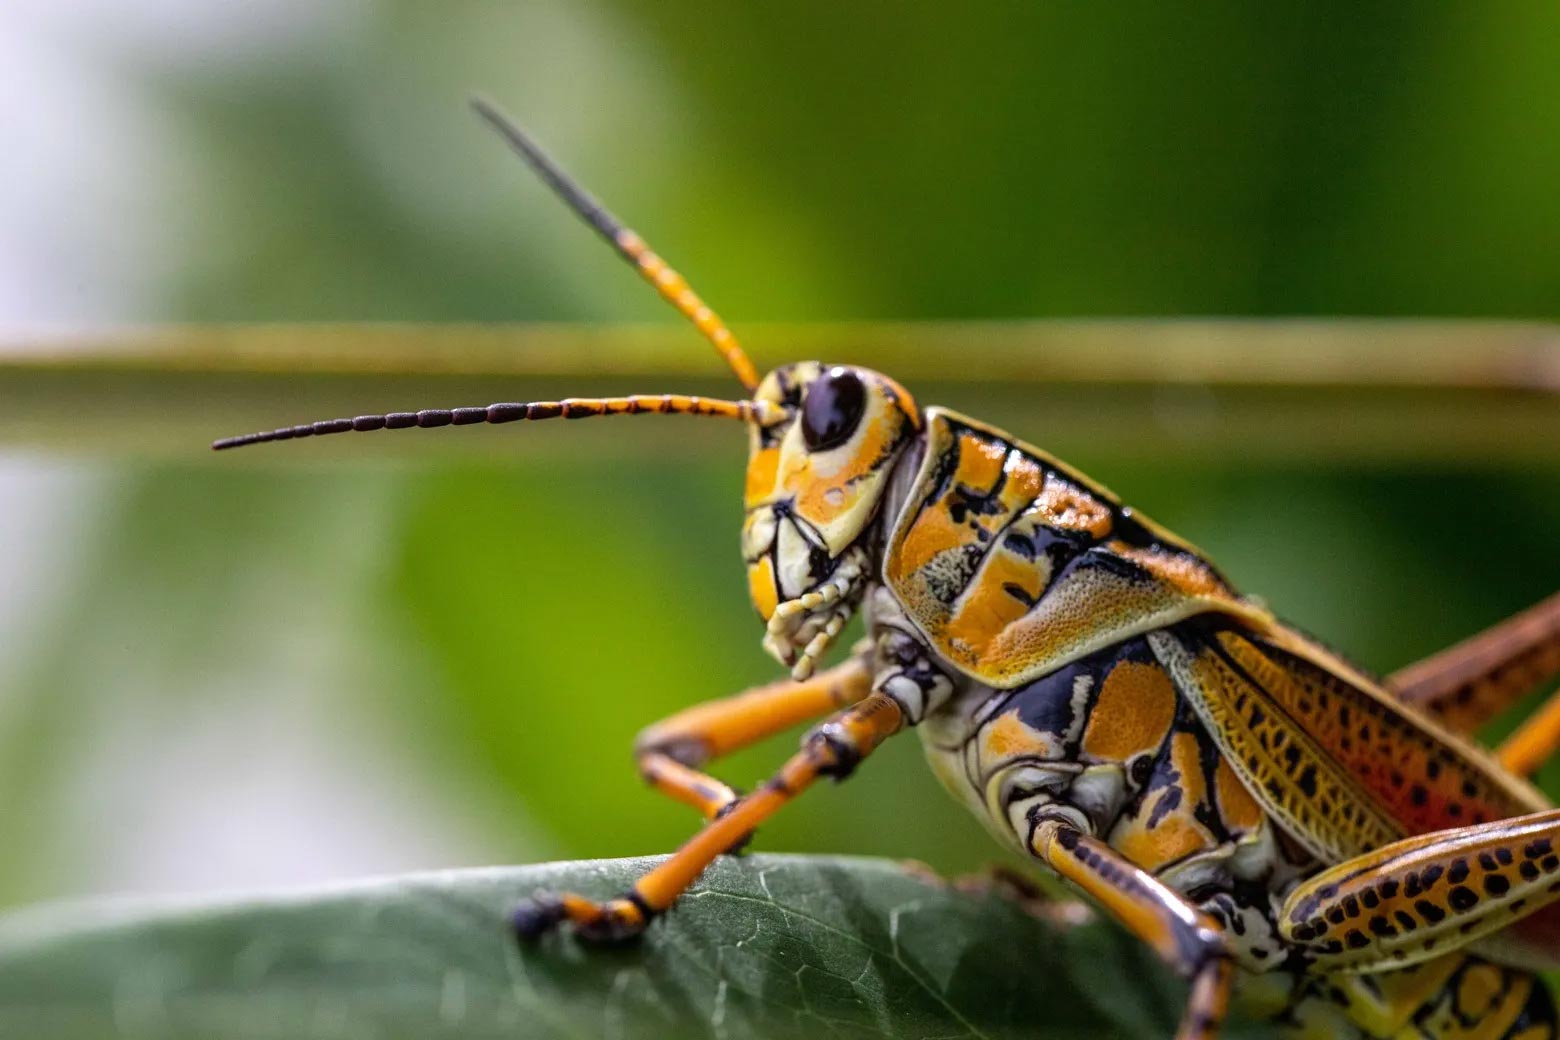 Eastern-Lubber-Grasshopper.jpg